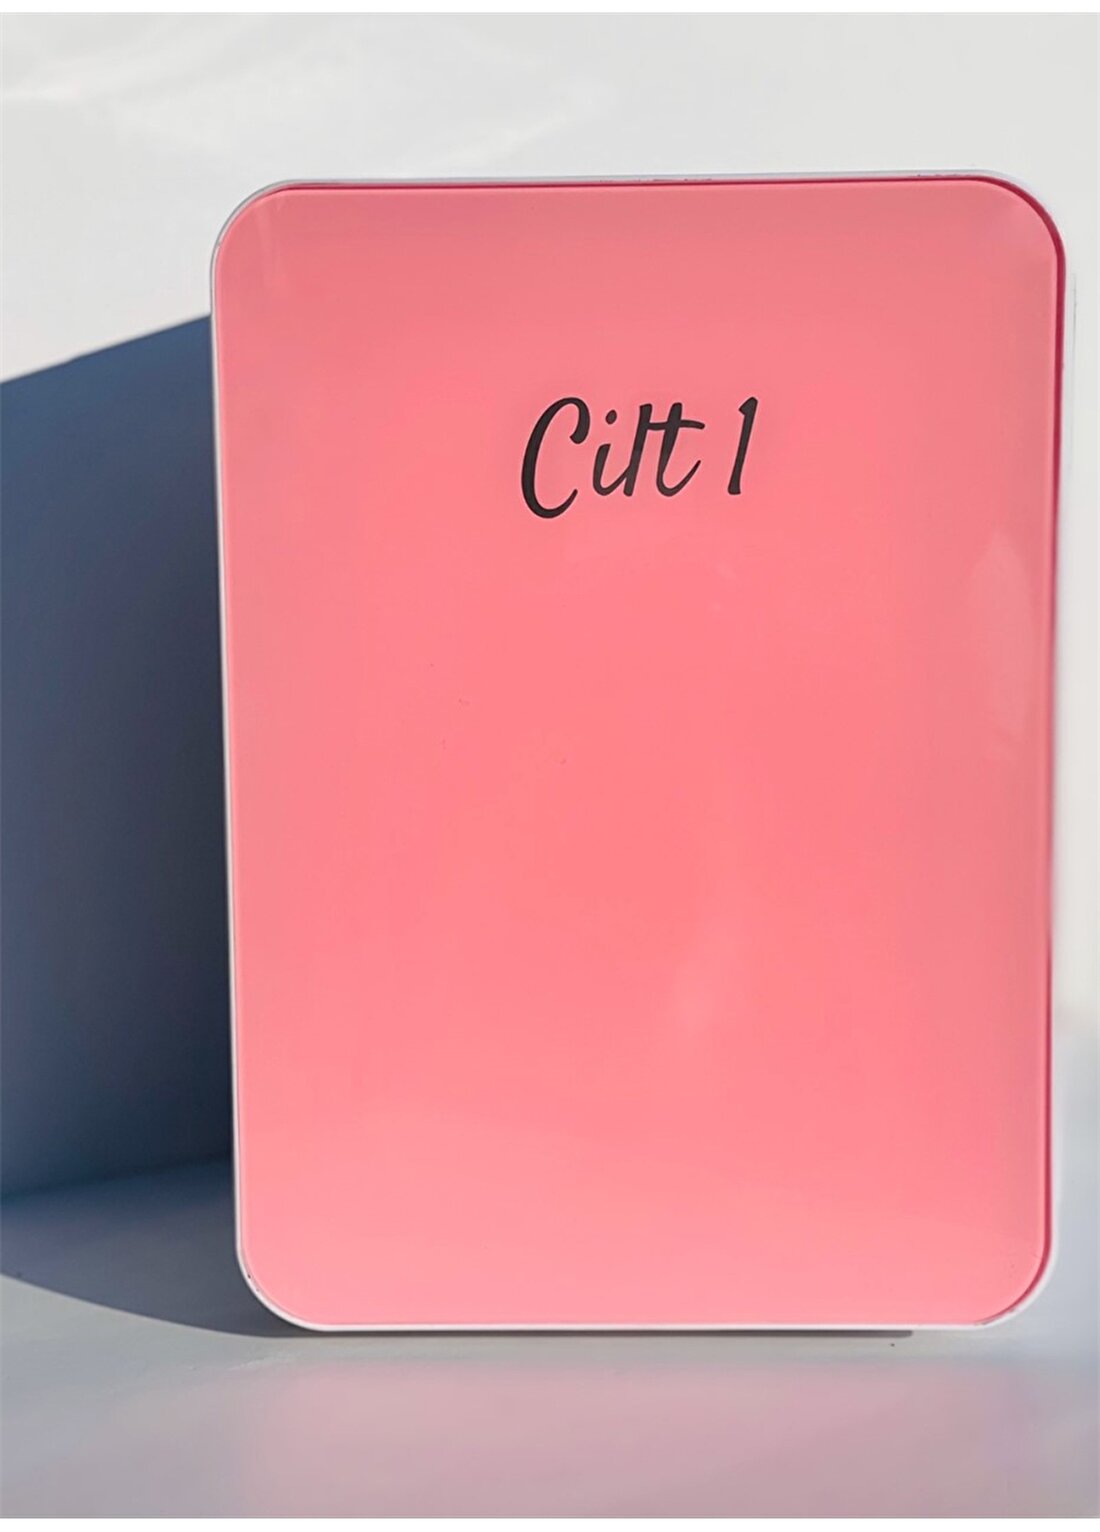 Cilt1 Bubble Gum Pink Beauty Fridge